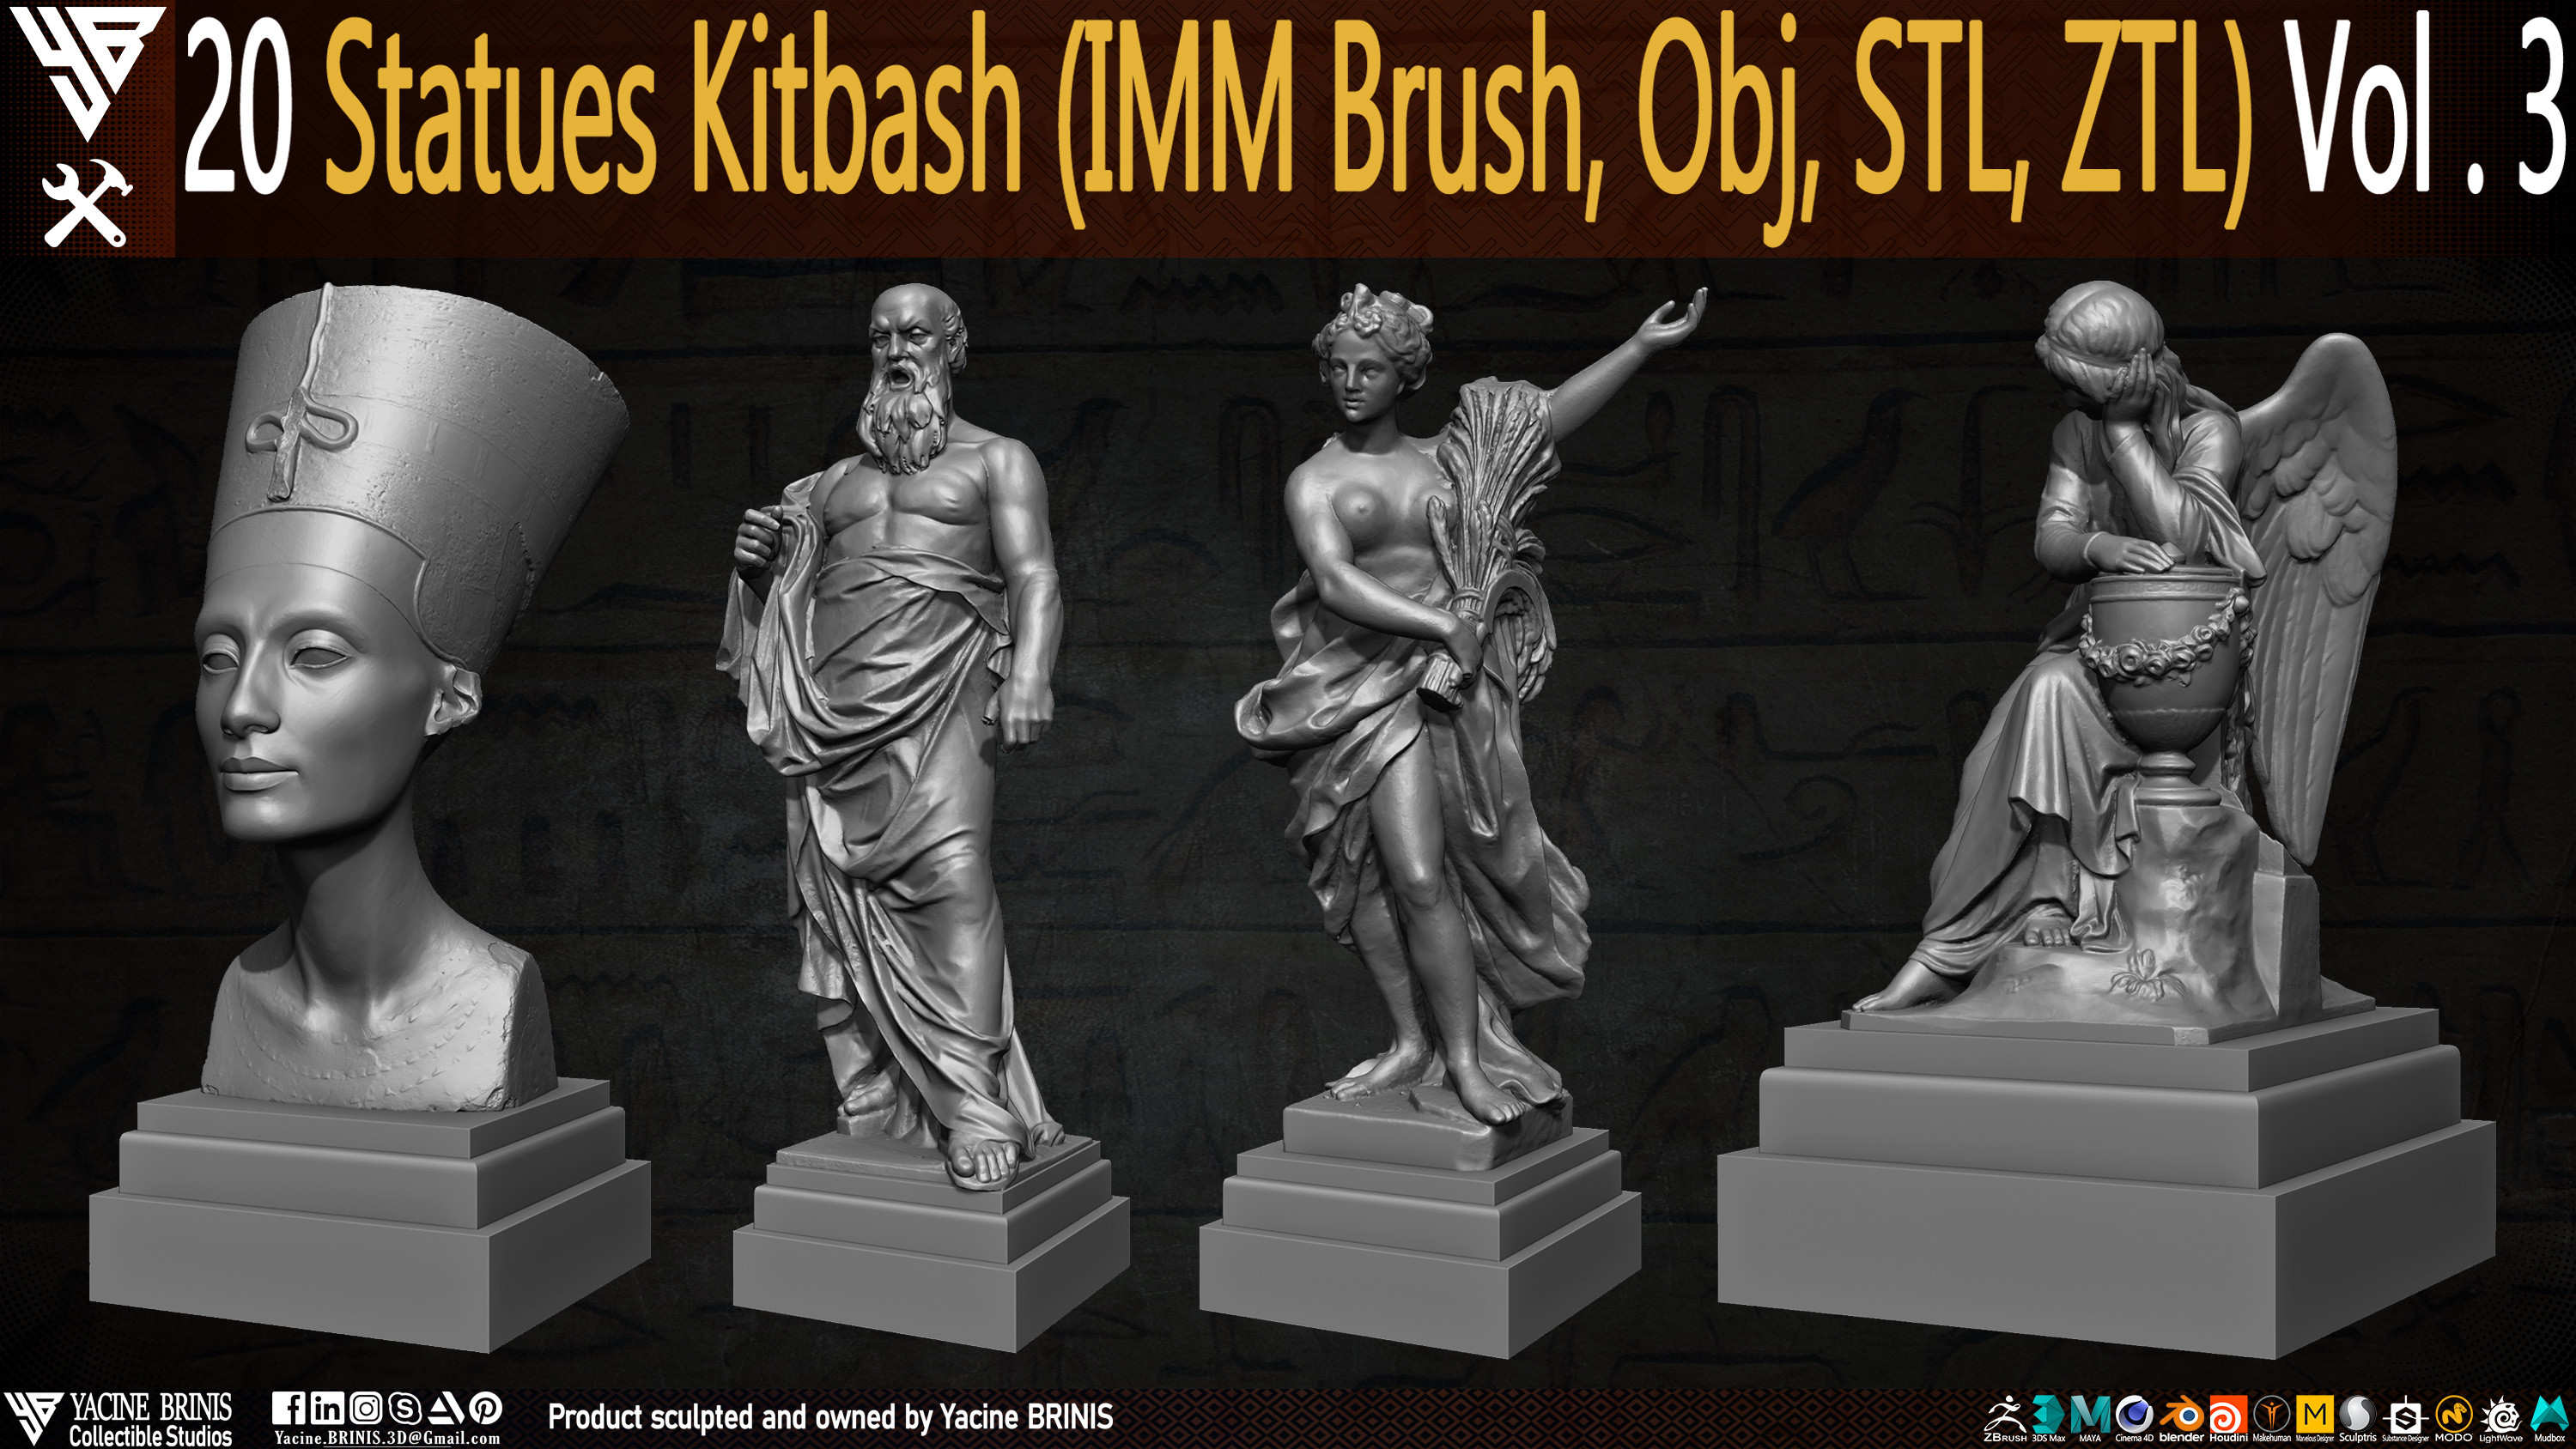 Statues Kitbash by yacine brinis Set 12